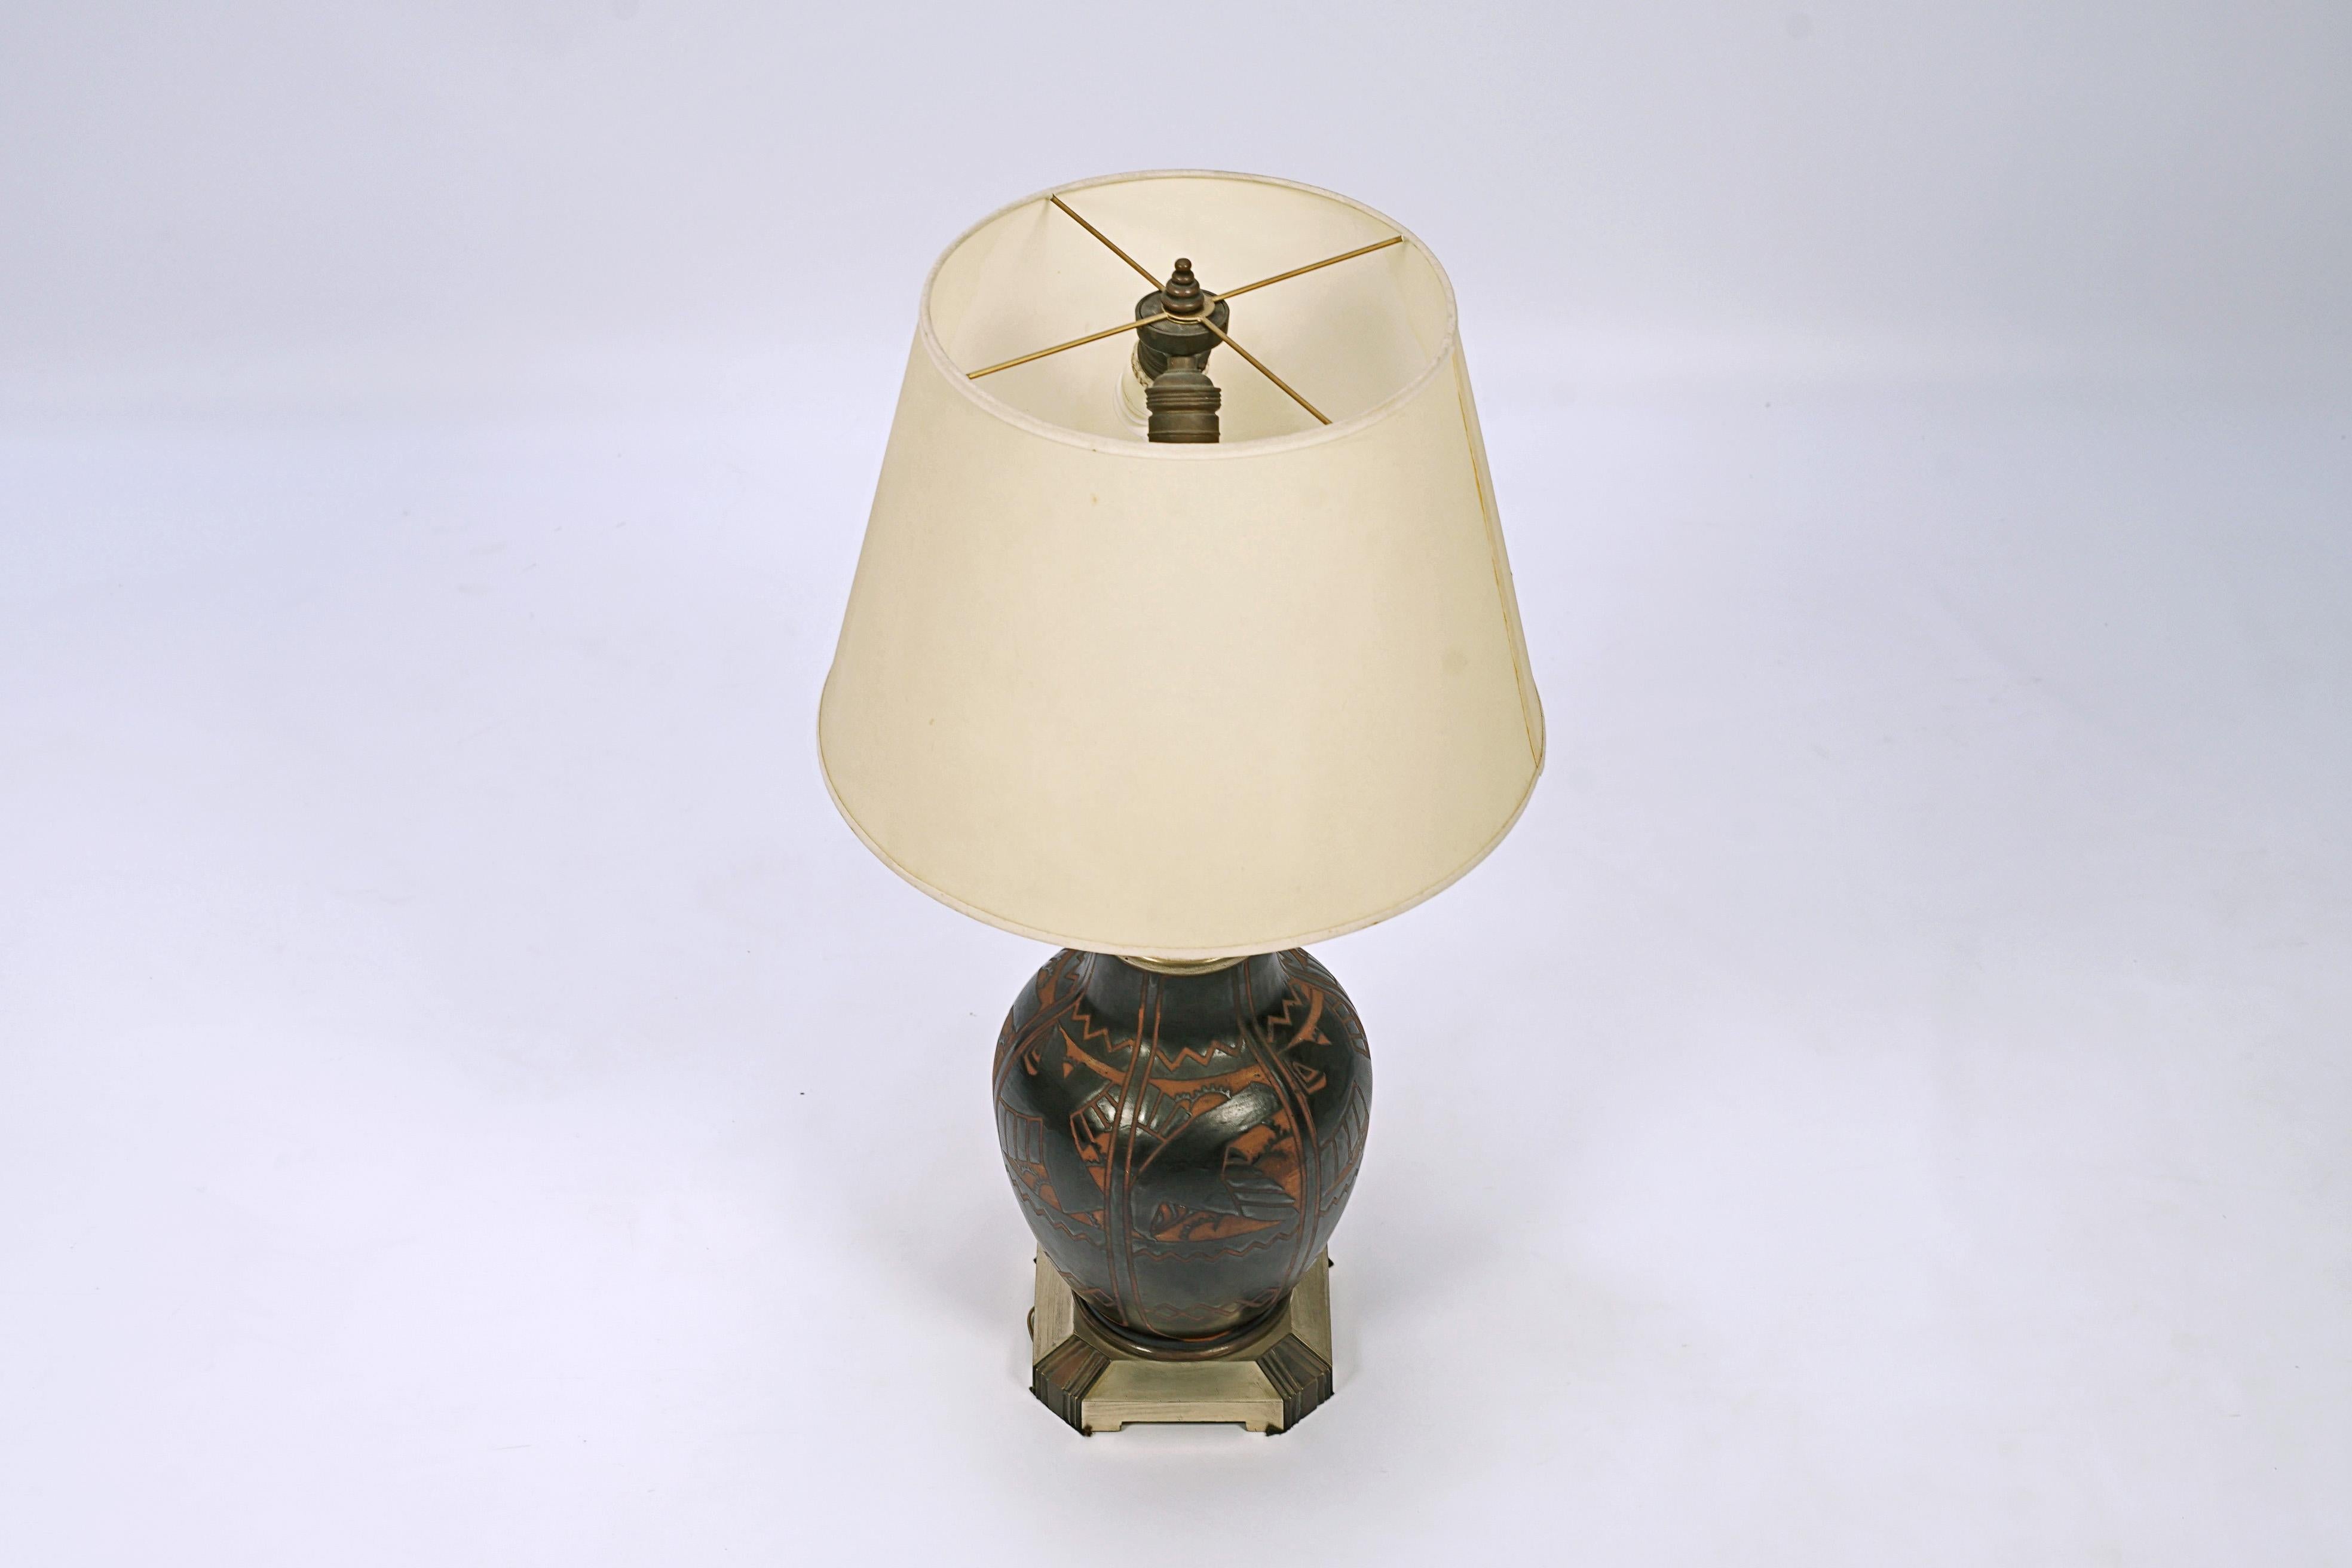 Lampe en céramique de Charles Catteau (1880-1966) et fabriquée par Boch (sous la marque Grès Keramis). Numéro de design D.1009.

Belgique, CIRCA 1925.